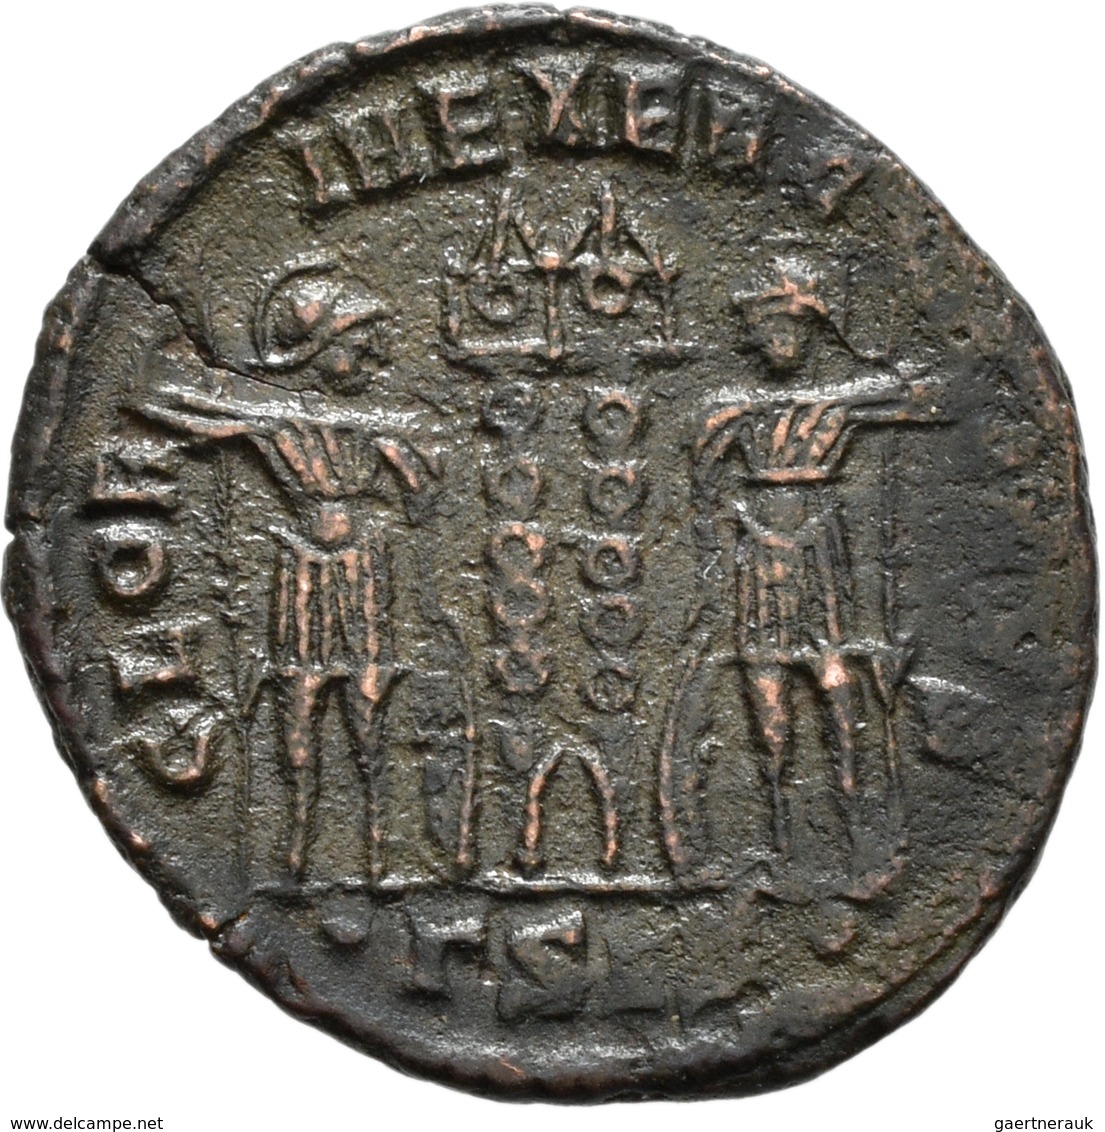 Antike: Kleine Sammlung Bronzemünzen aus der Römischen Kaiserzeit; meist Æ - Follis, unter anderem v